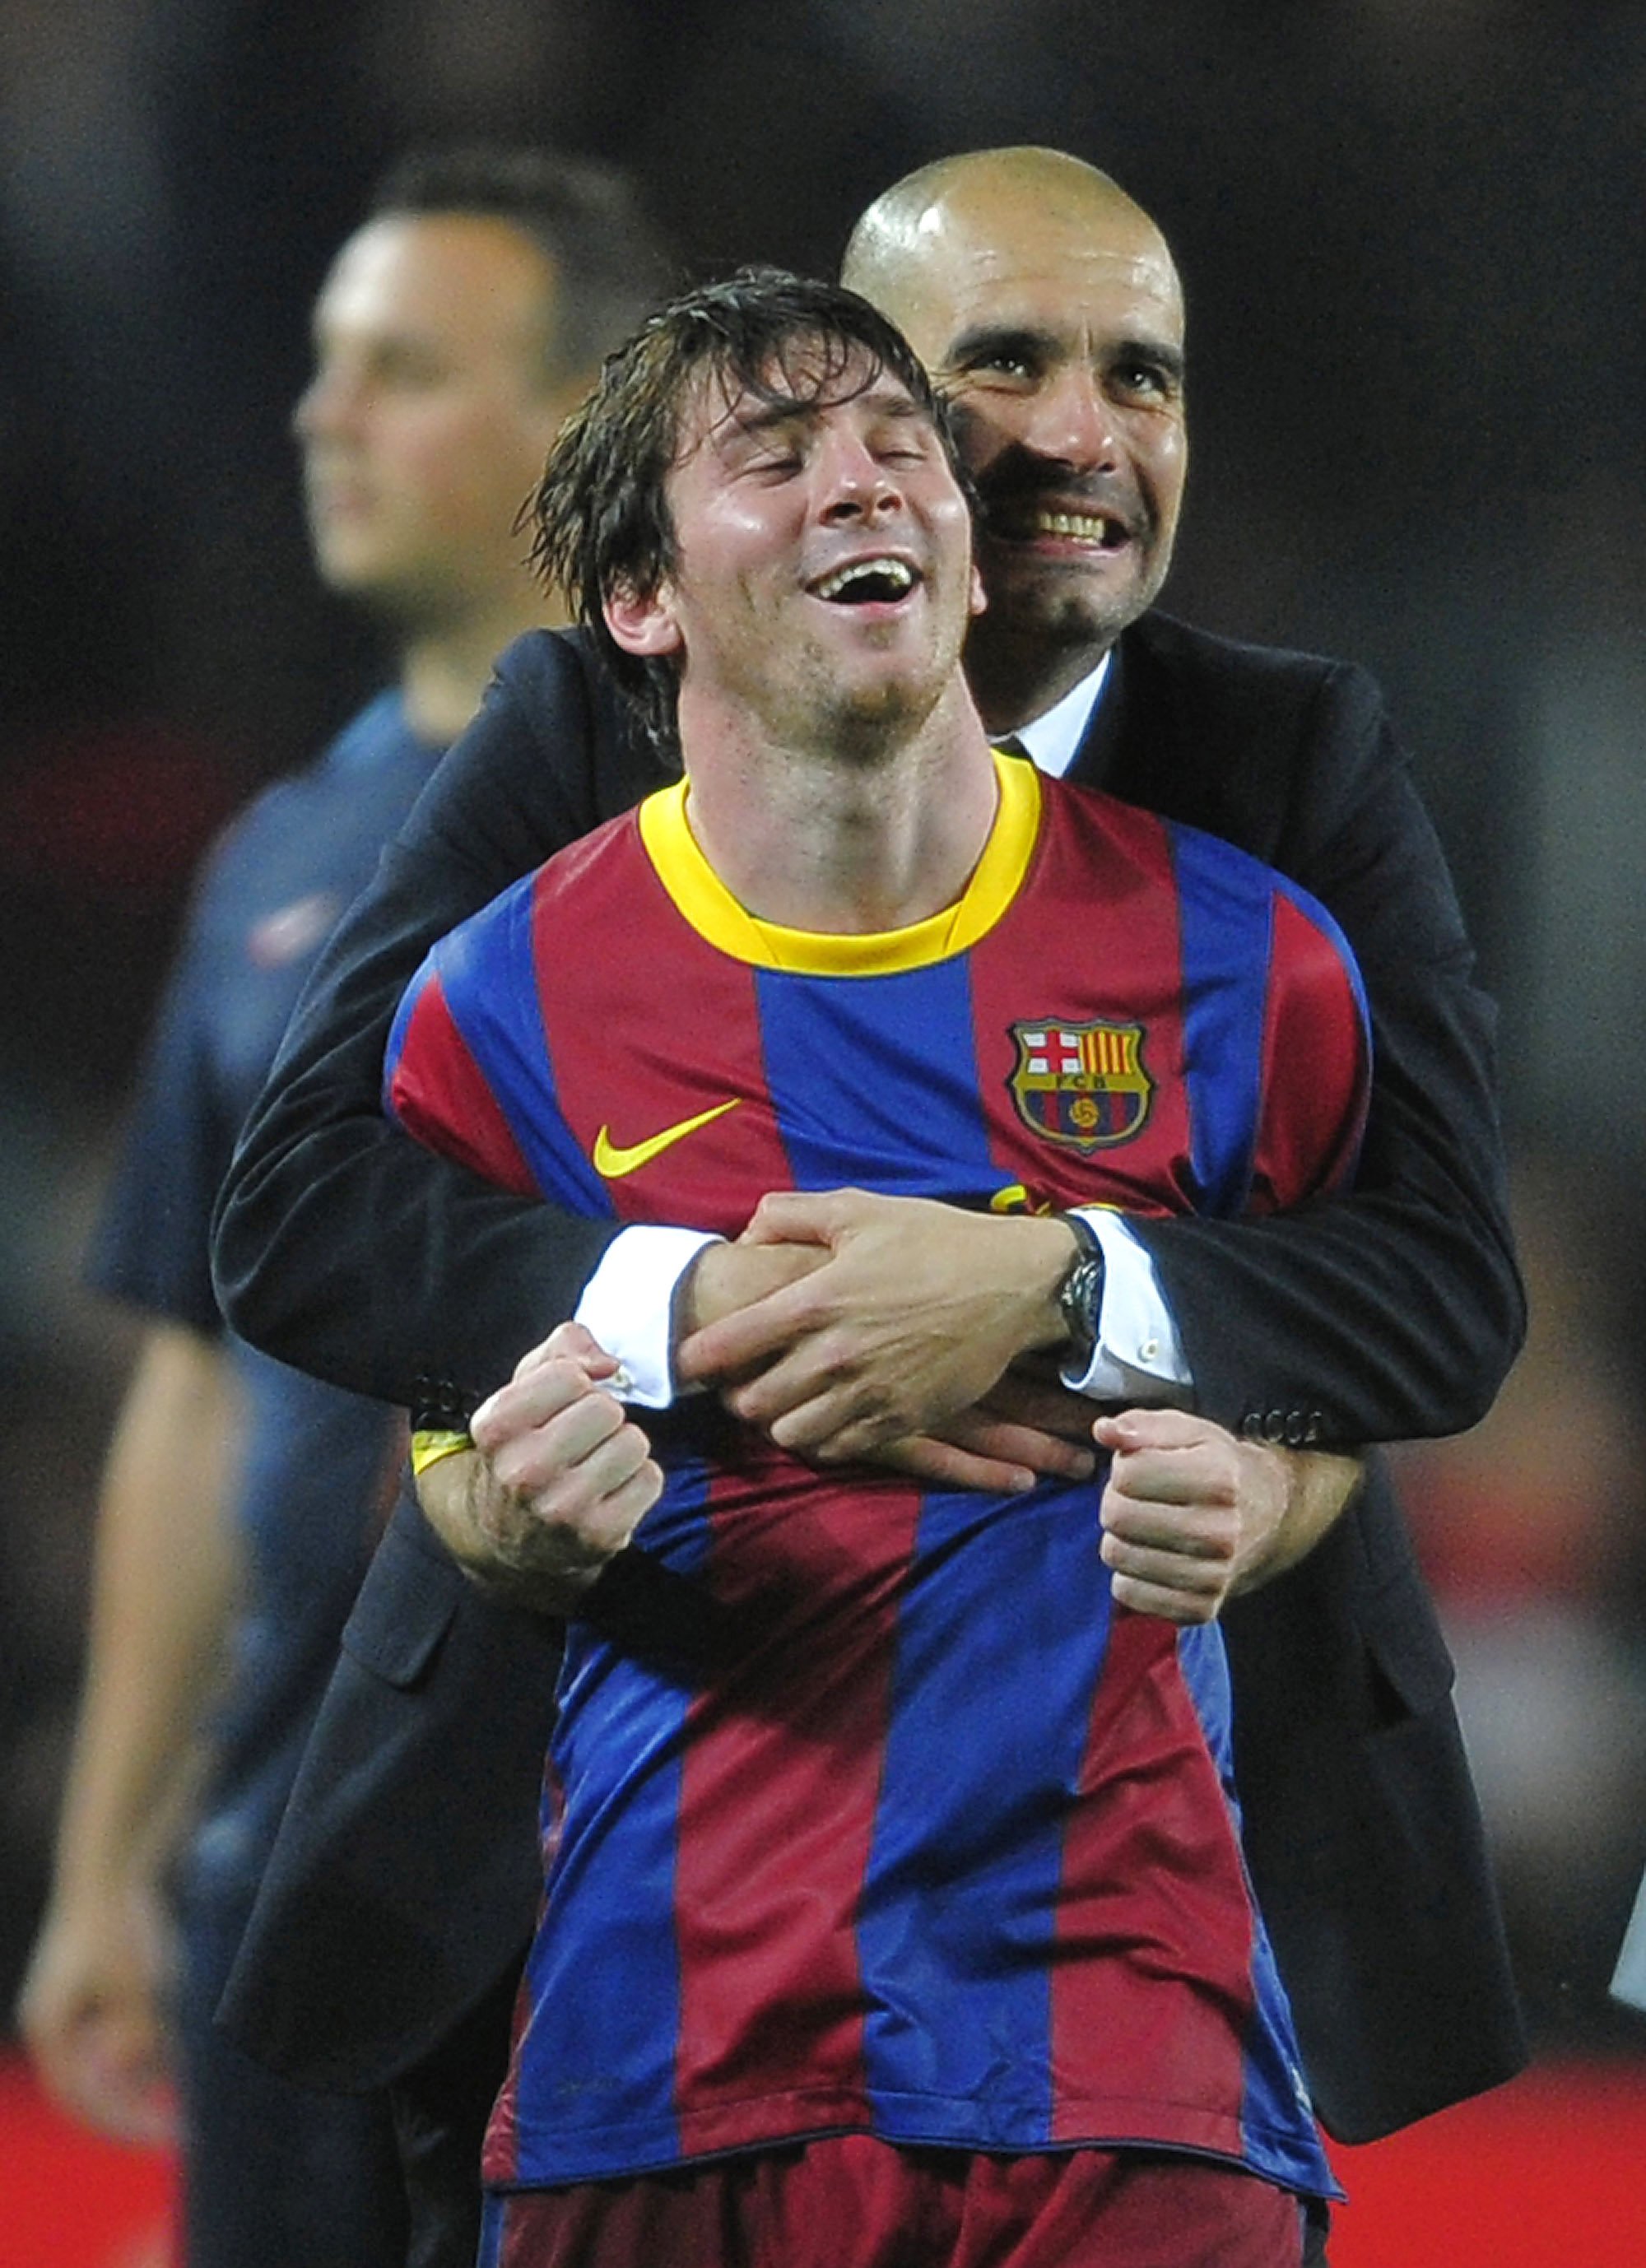 Messi troba a faltar Guardiola: "Semblava tan senzill que tothom el volia copiar"